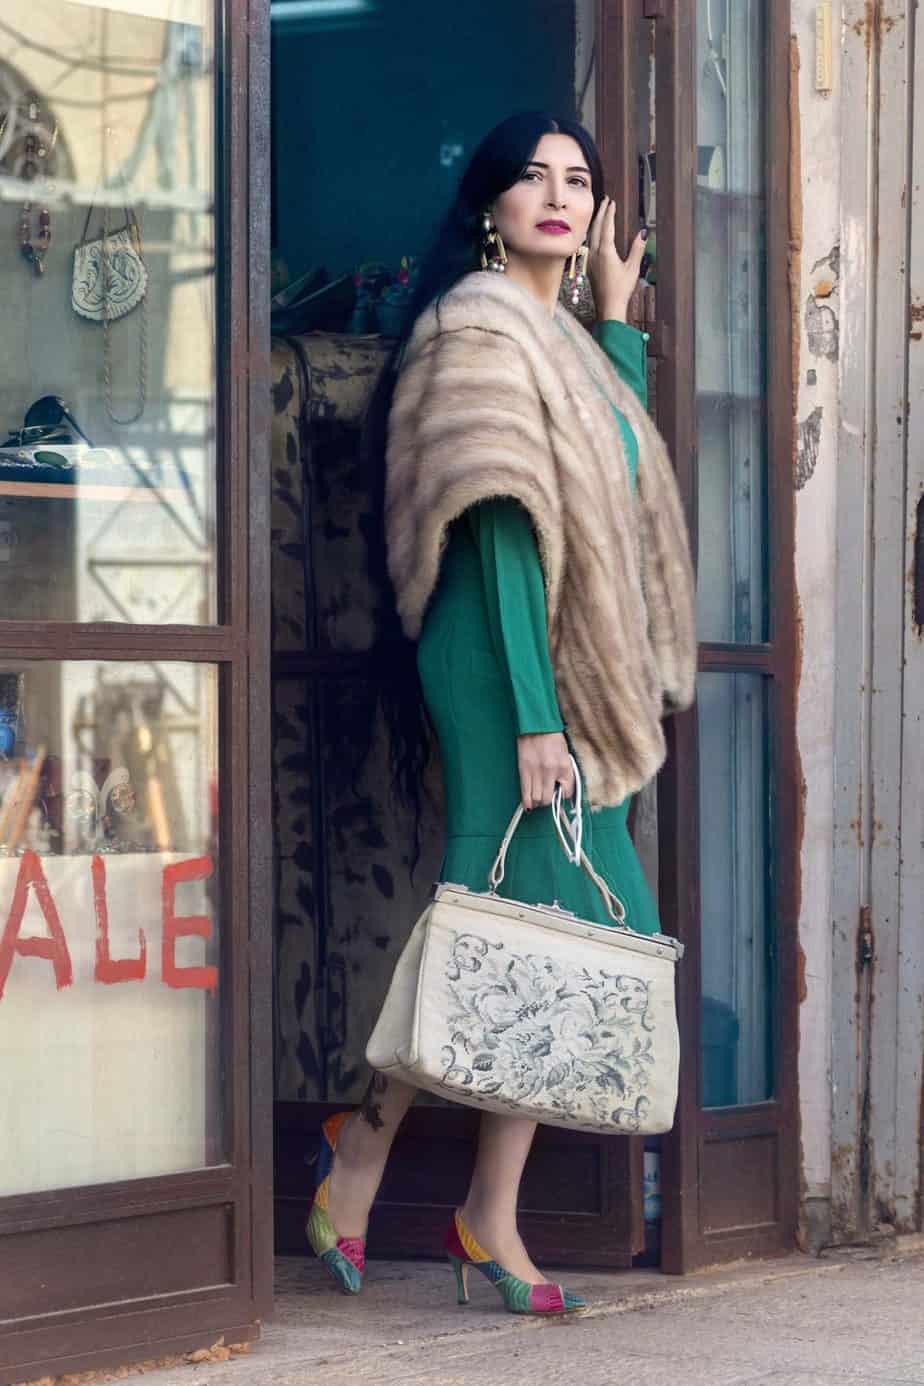 שמלה christian Dior נעליים מותג CHARLES צרפתי. . . מאיה אושרי כהן, צילום: Gennadiy Tsodik, אופנה במנהרת הזמן, לוני ויטג׳ -